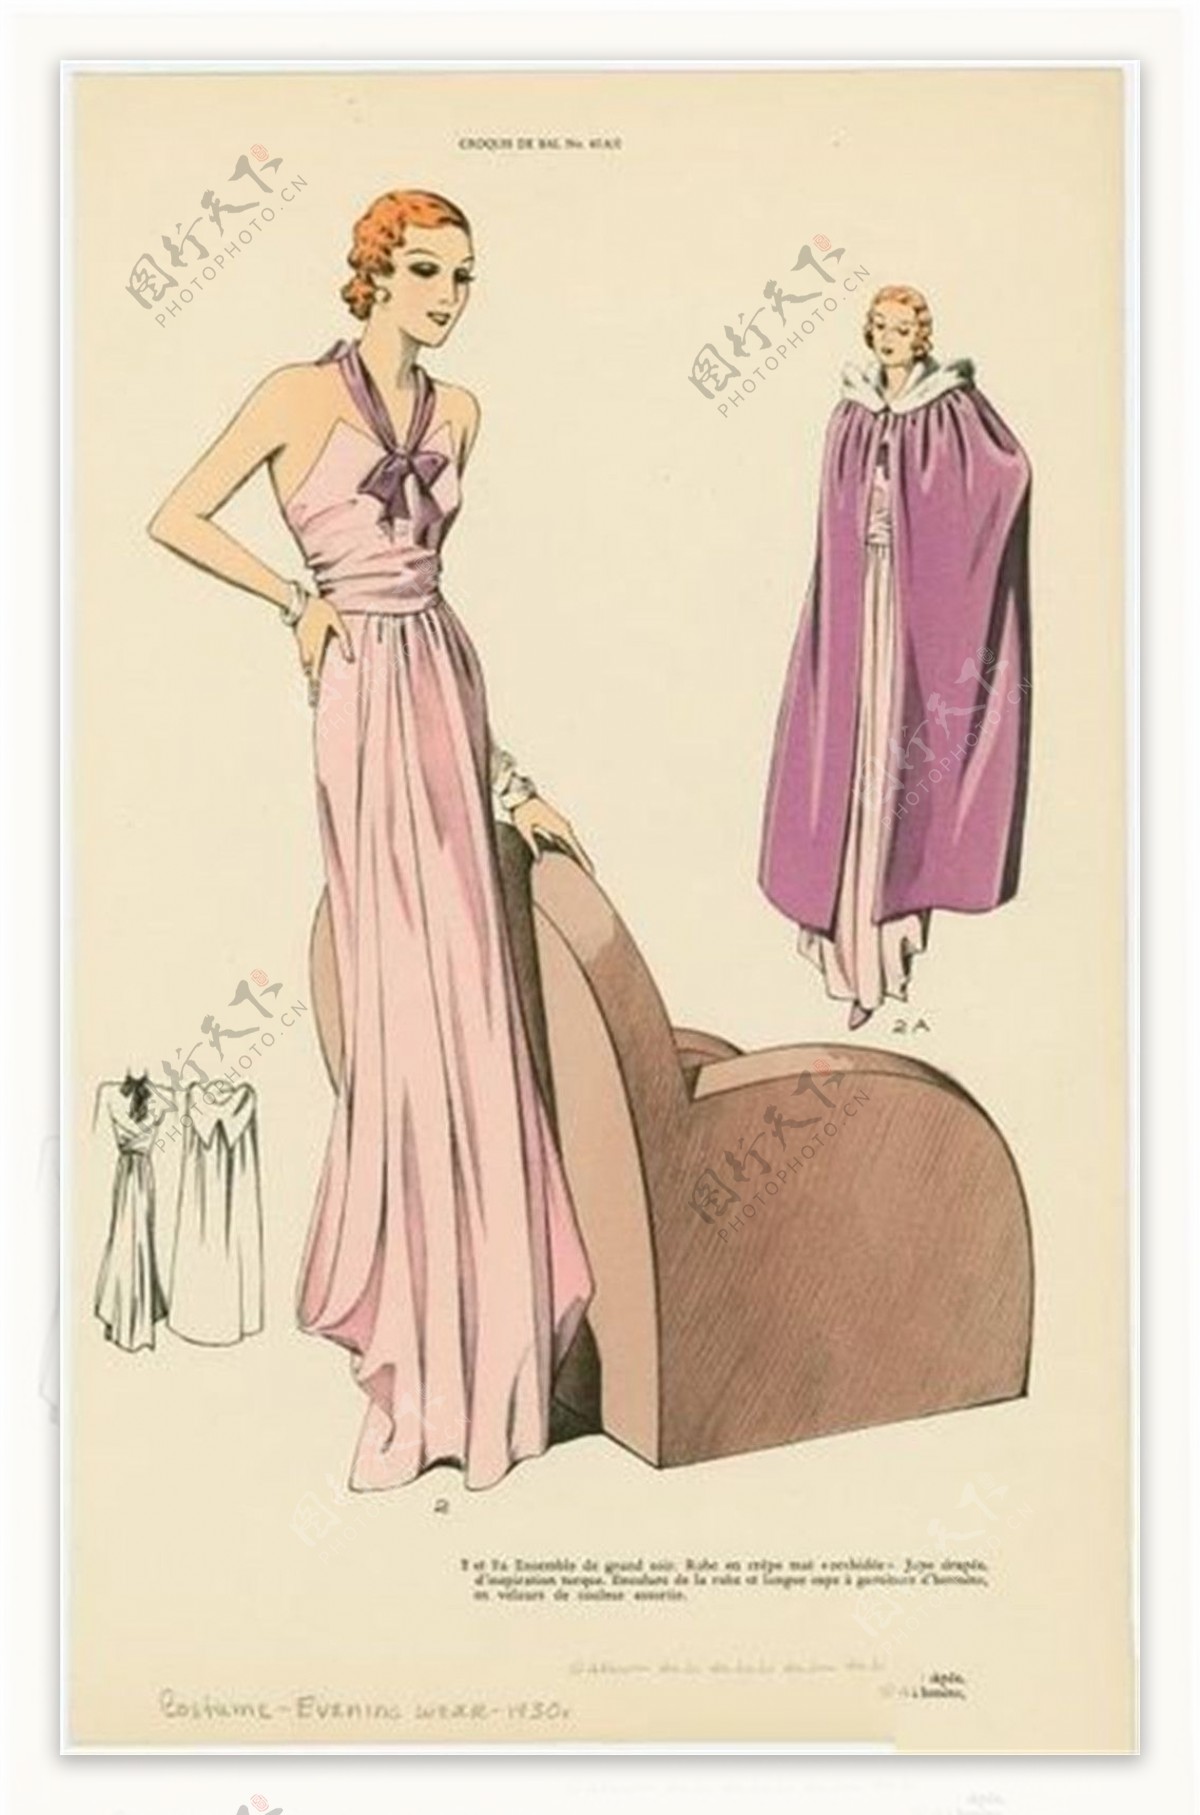 2款欧式粉色长裙礼服设计图